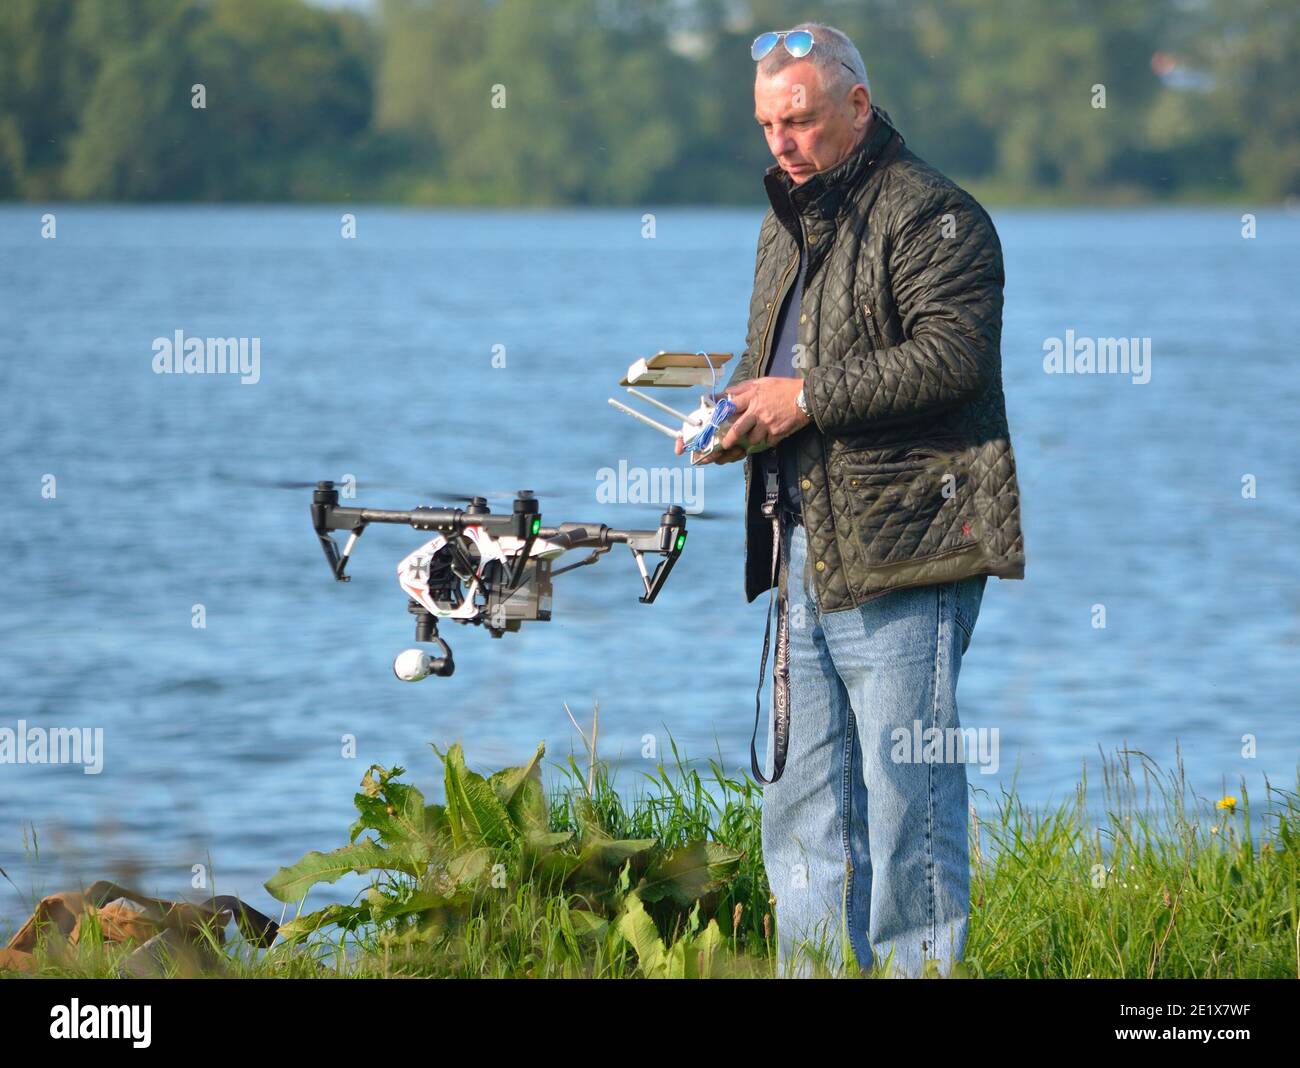 Homme volant Drone, Drone dans l'image, l'eau en arrière-plan Photo Stock -  Alamy